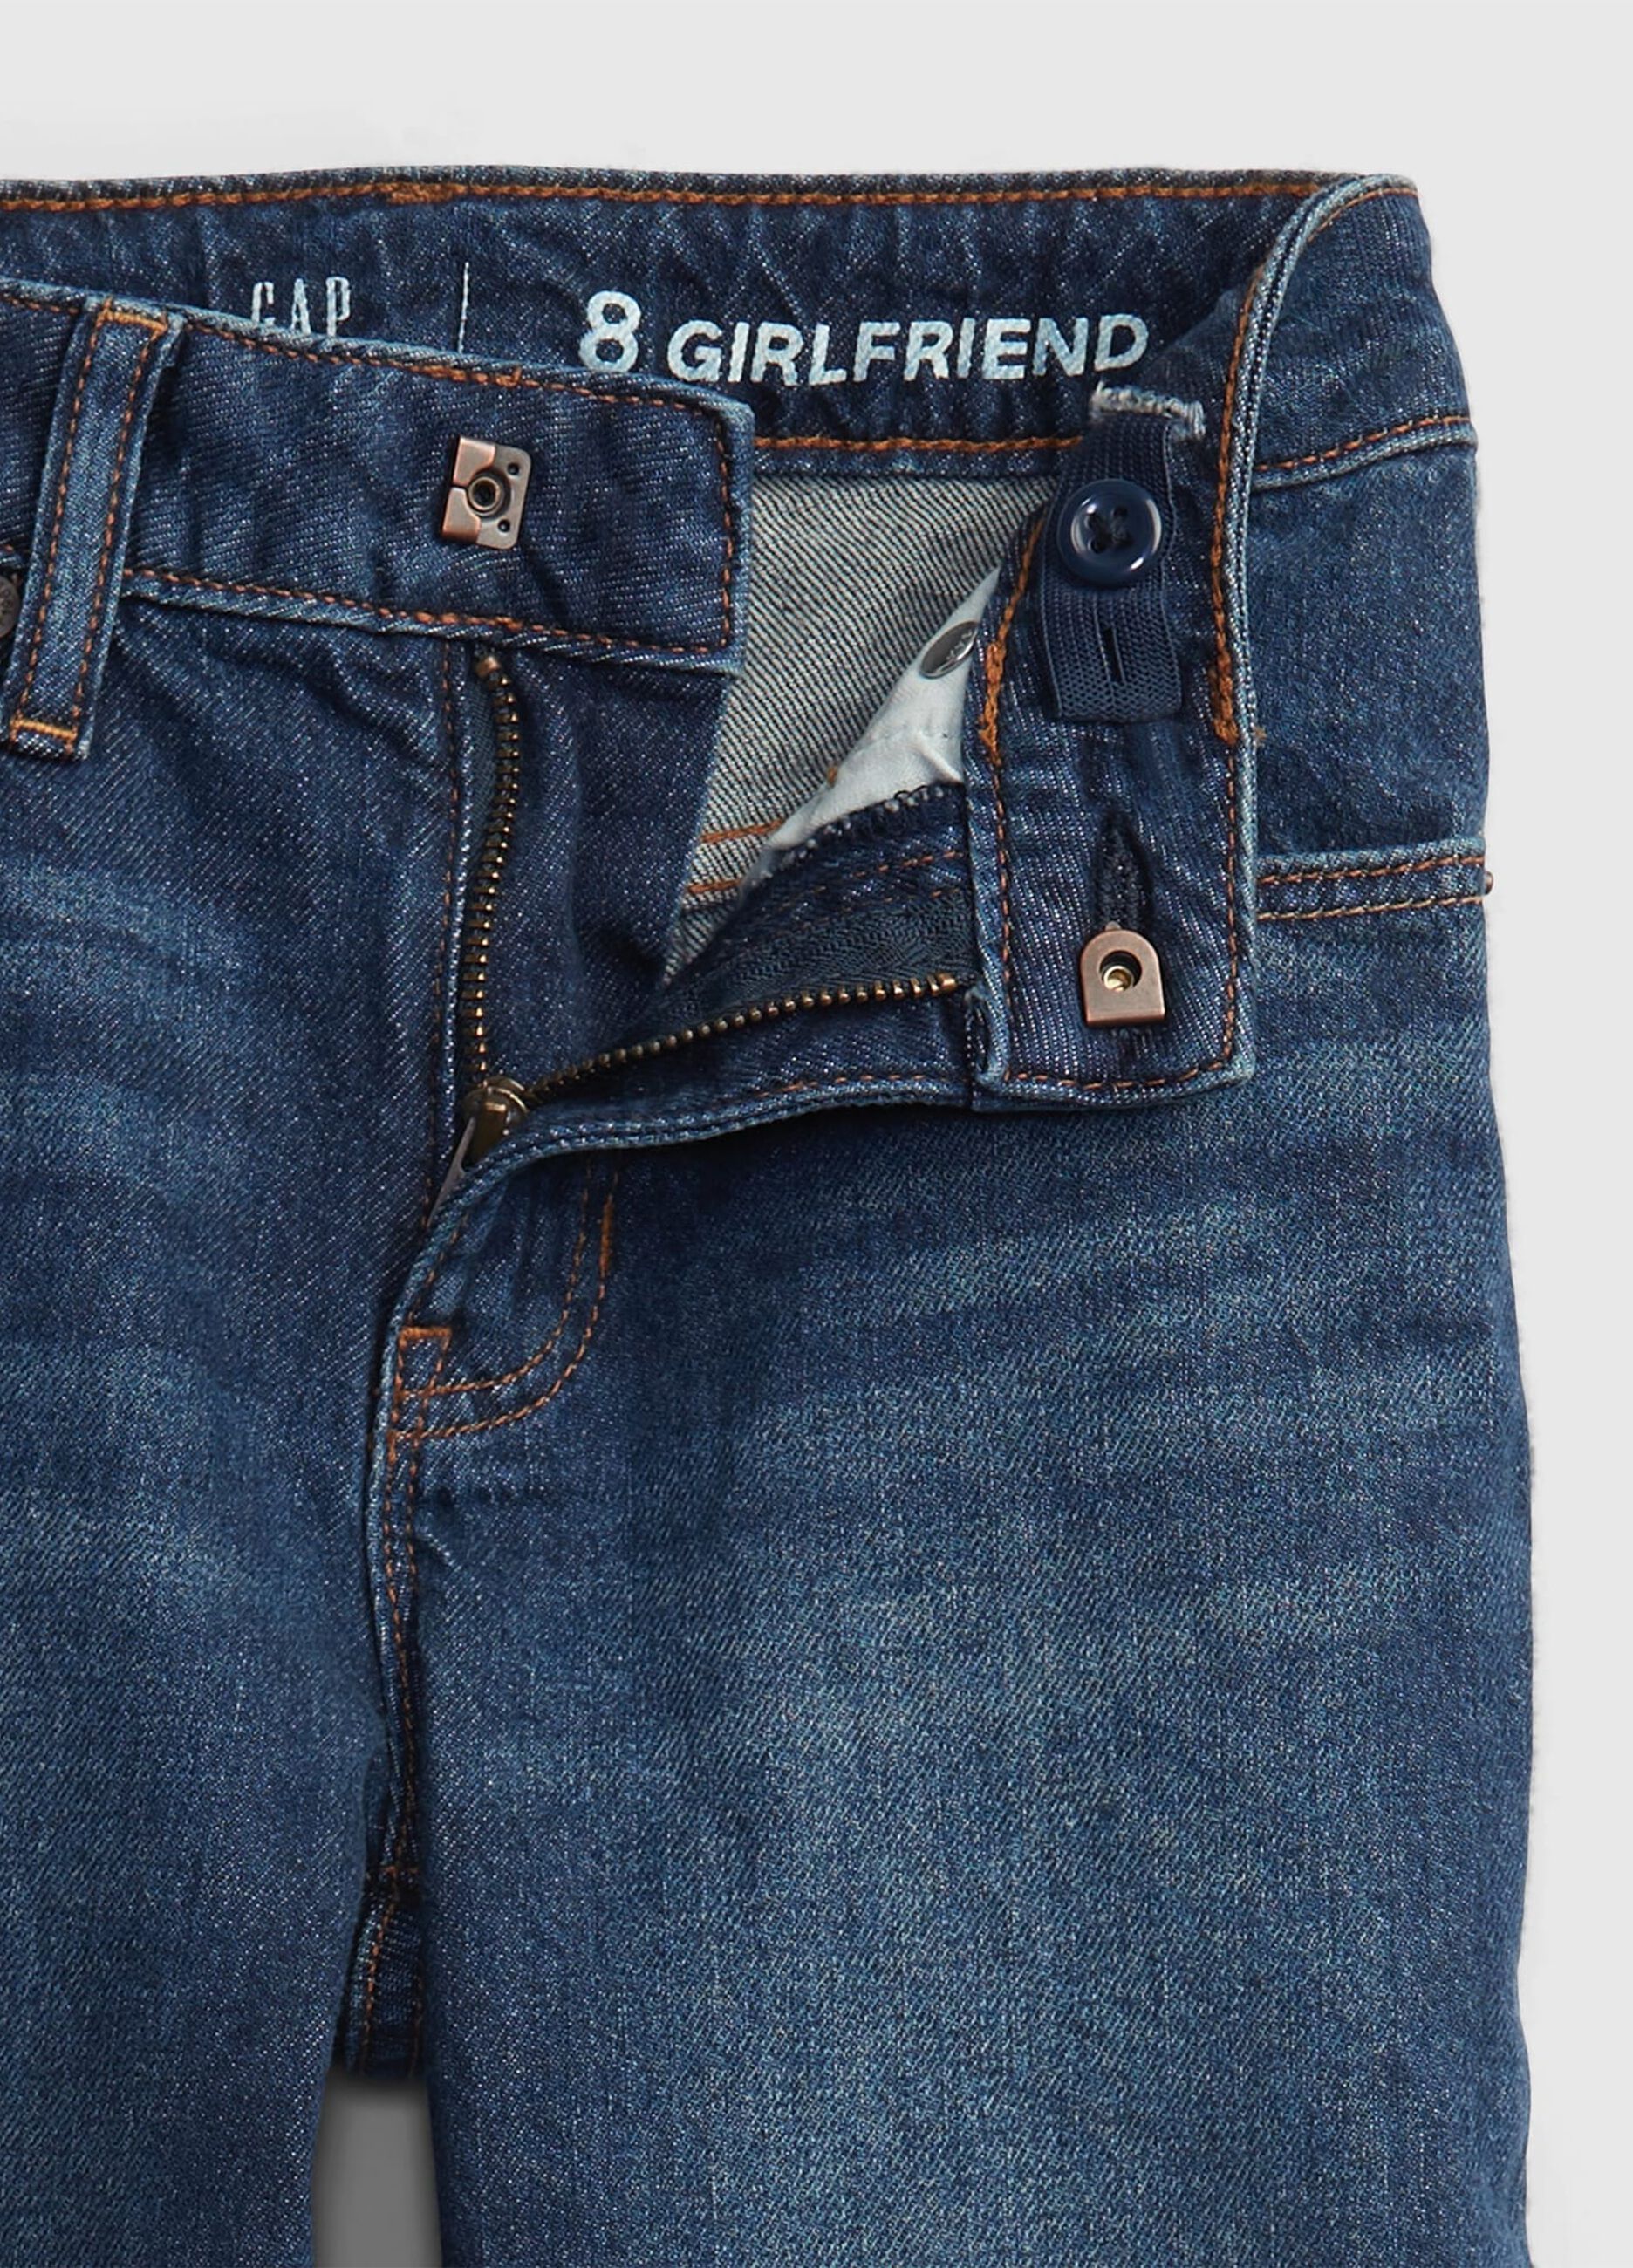 Girlfriend jeans